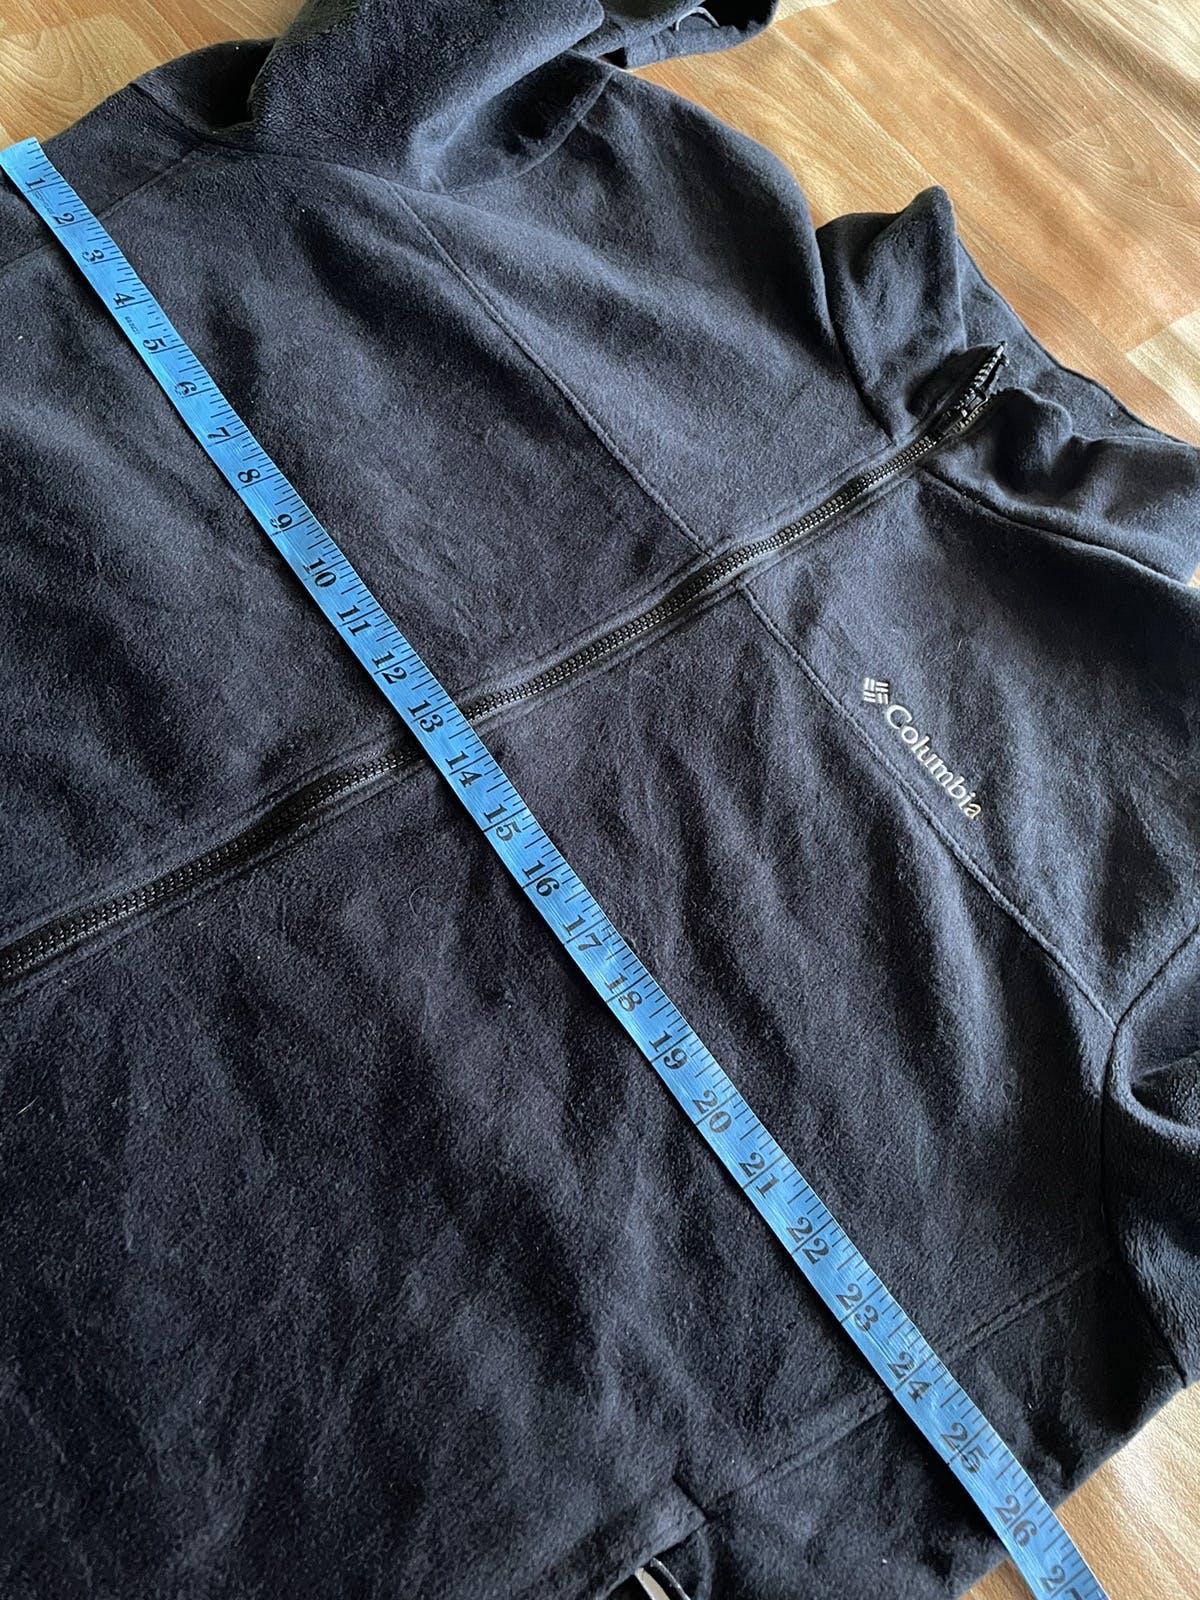 💥Vintage Columbia Omni Heat Fleece Zipper Sweater - 16